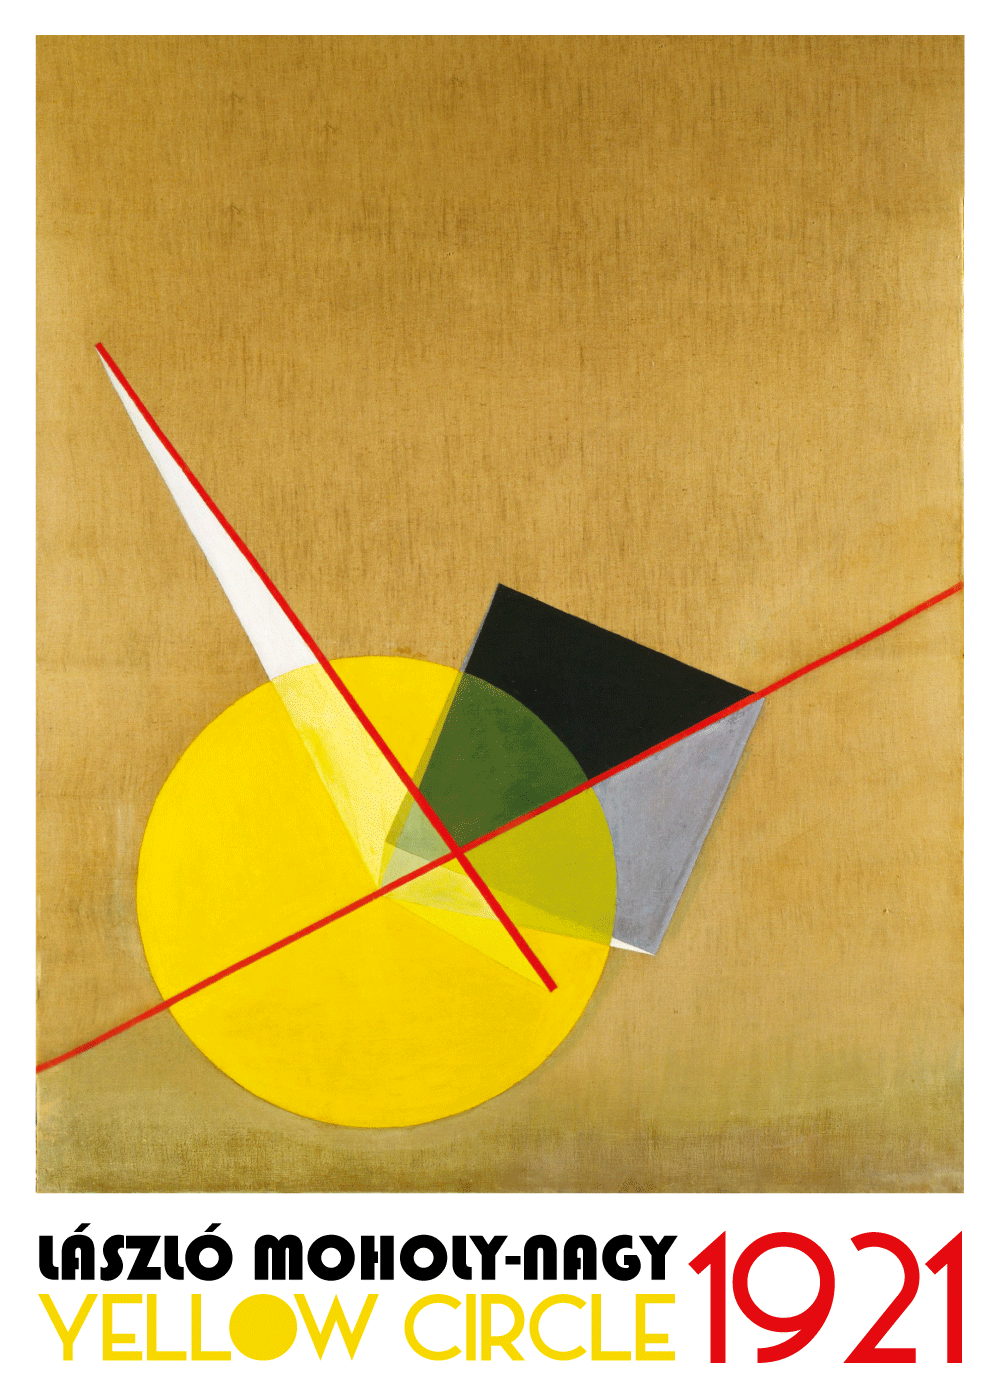 Yellow Circle Bauhaus - László Moholy-Nagy kunstplakat